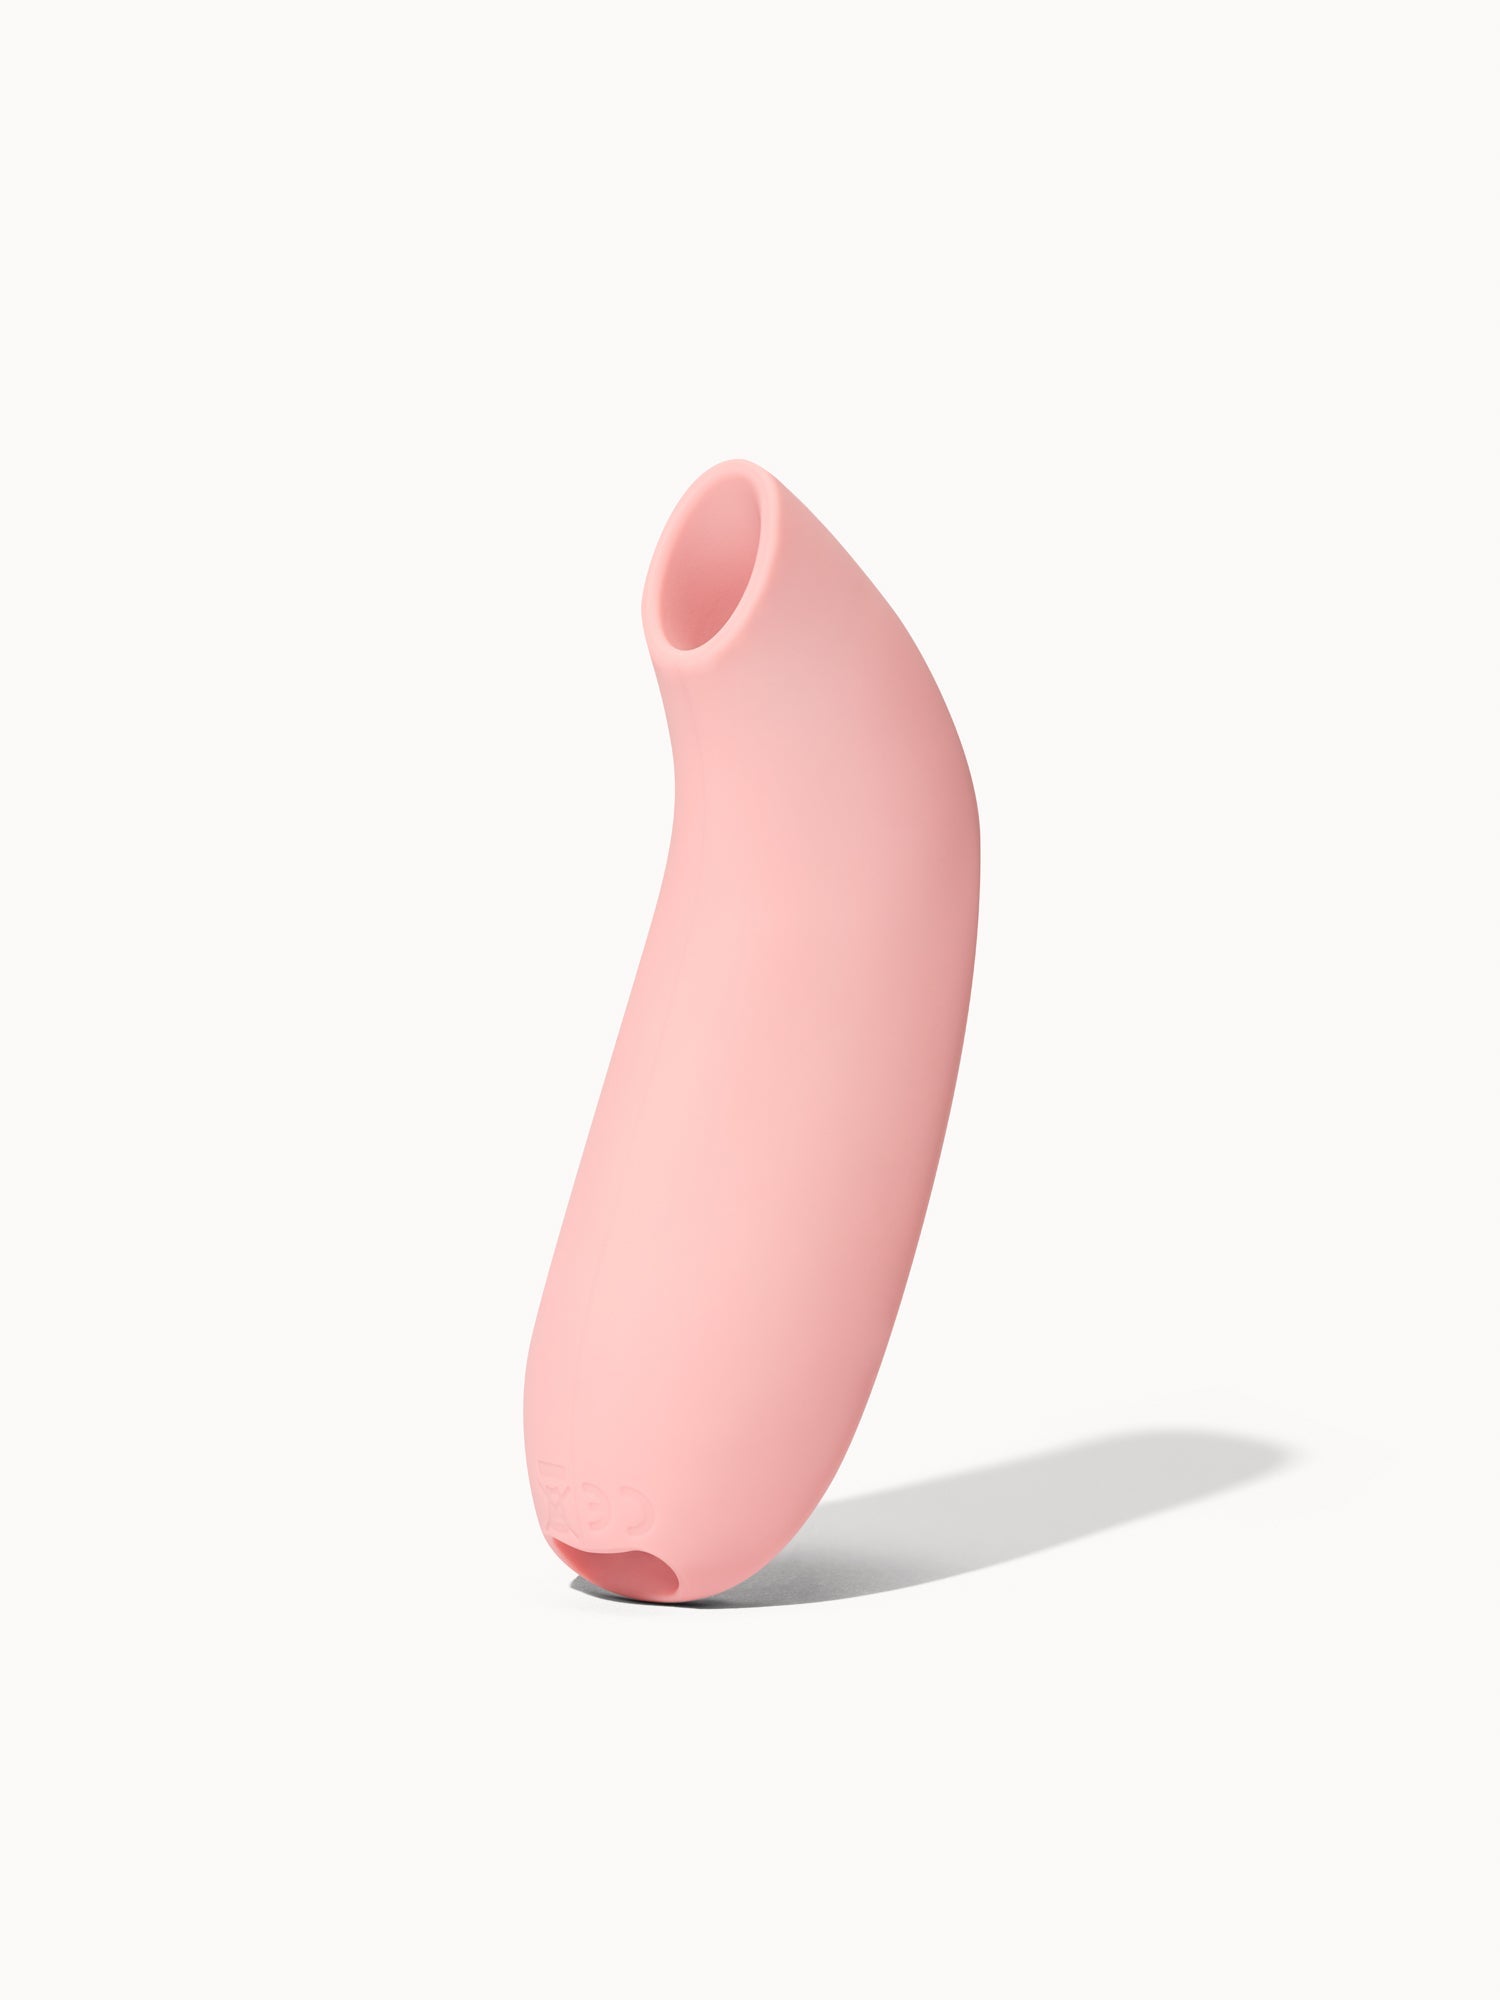 Flush | Aer vibrator in light pink